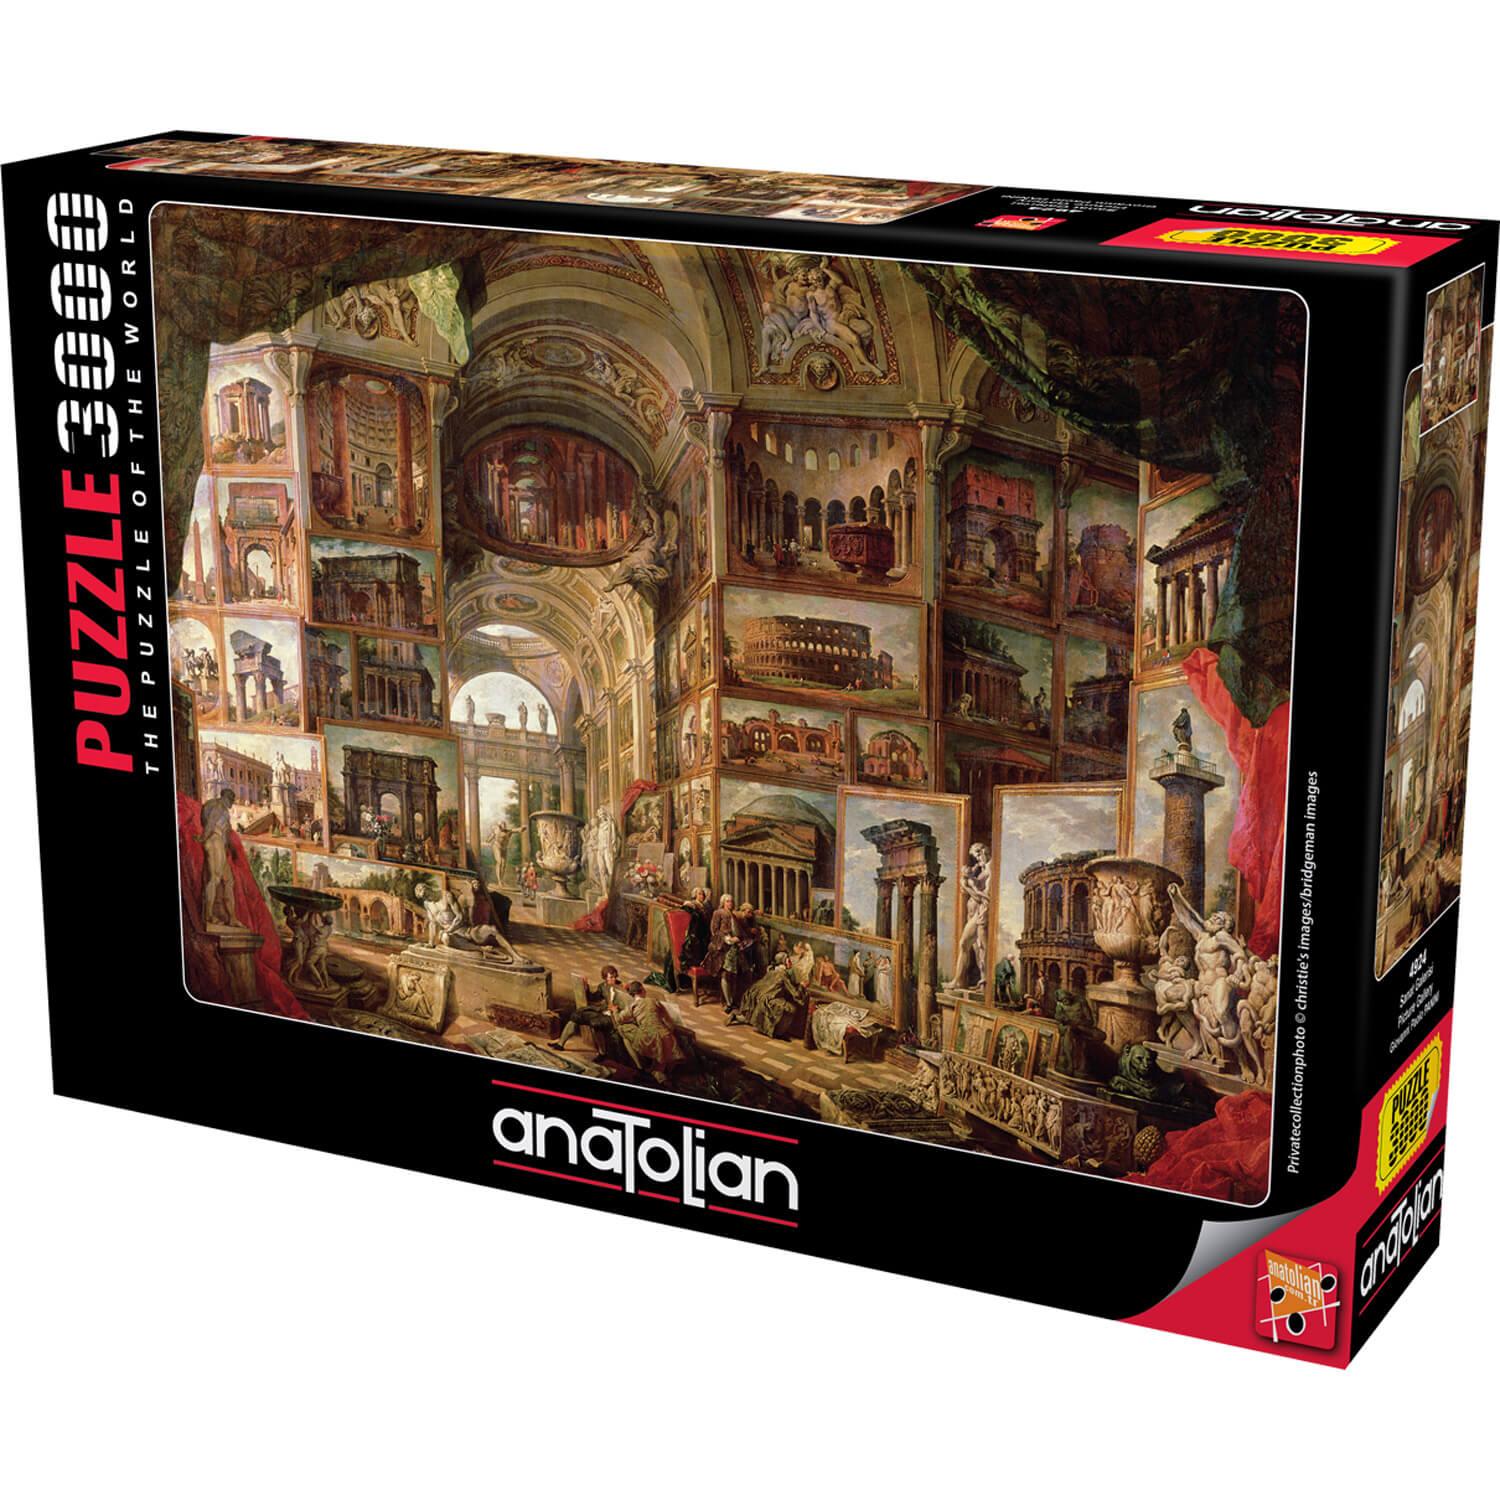 Tapis de puzzle 1000-3000 pièces - Anatolian - Rue des Puzzles